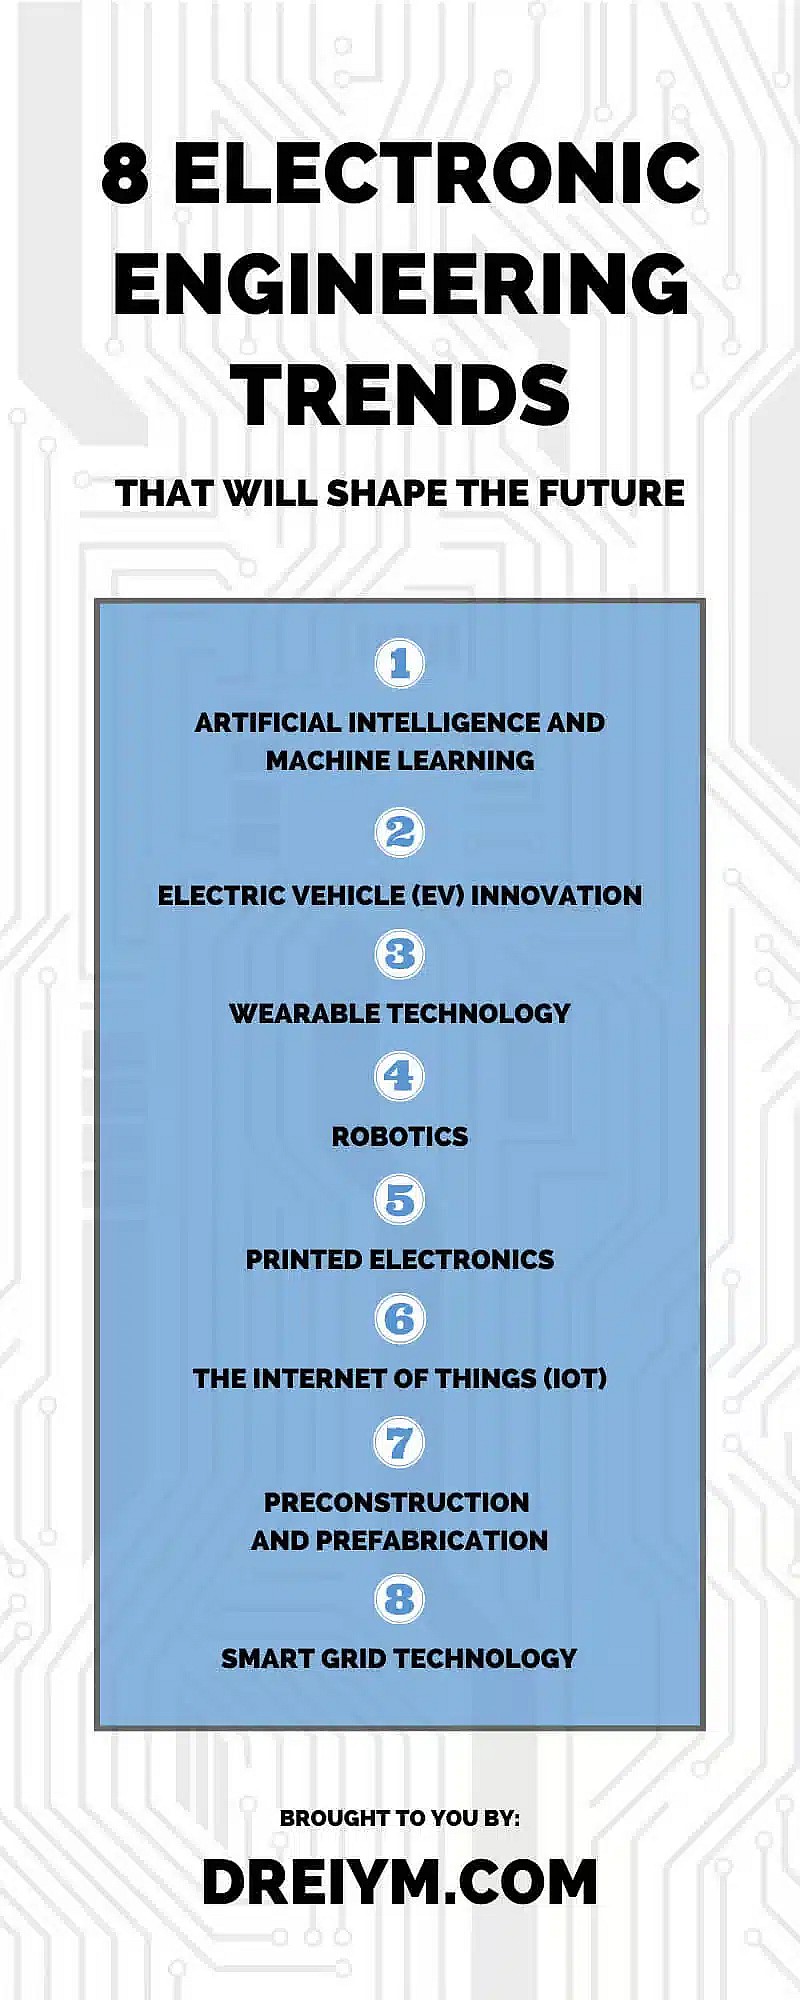 塑造未来的 8 个电子工程趋势